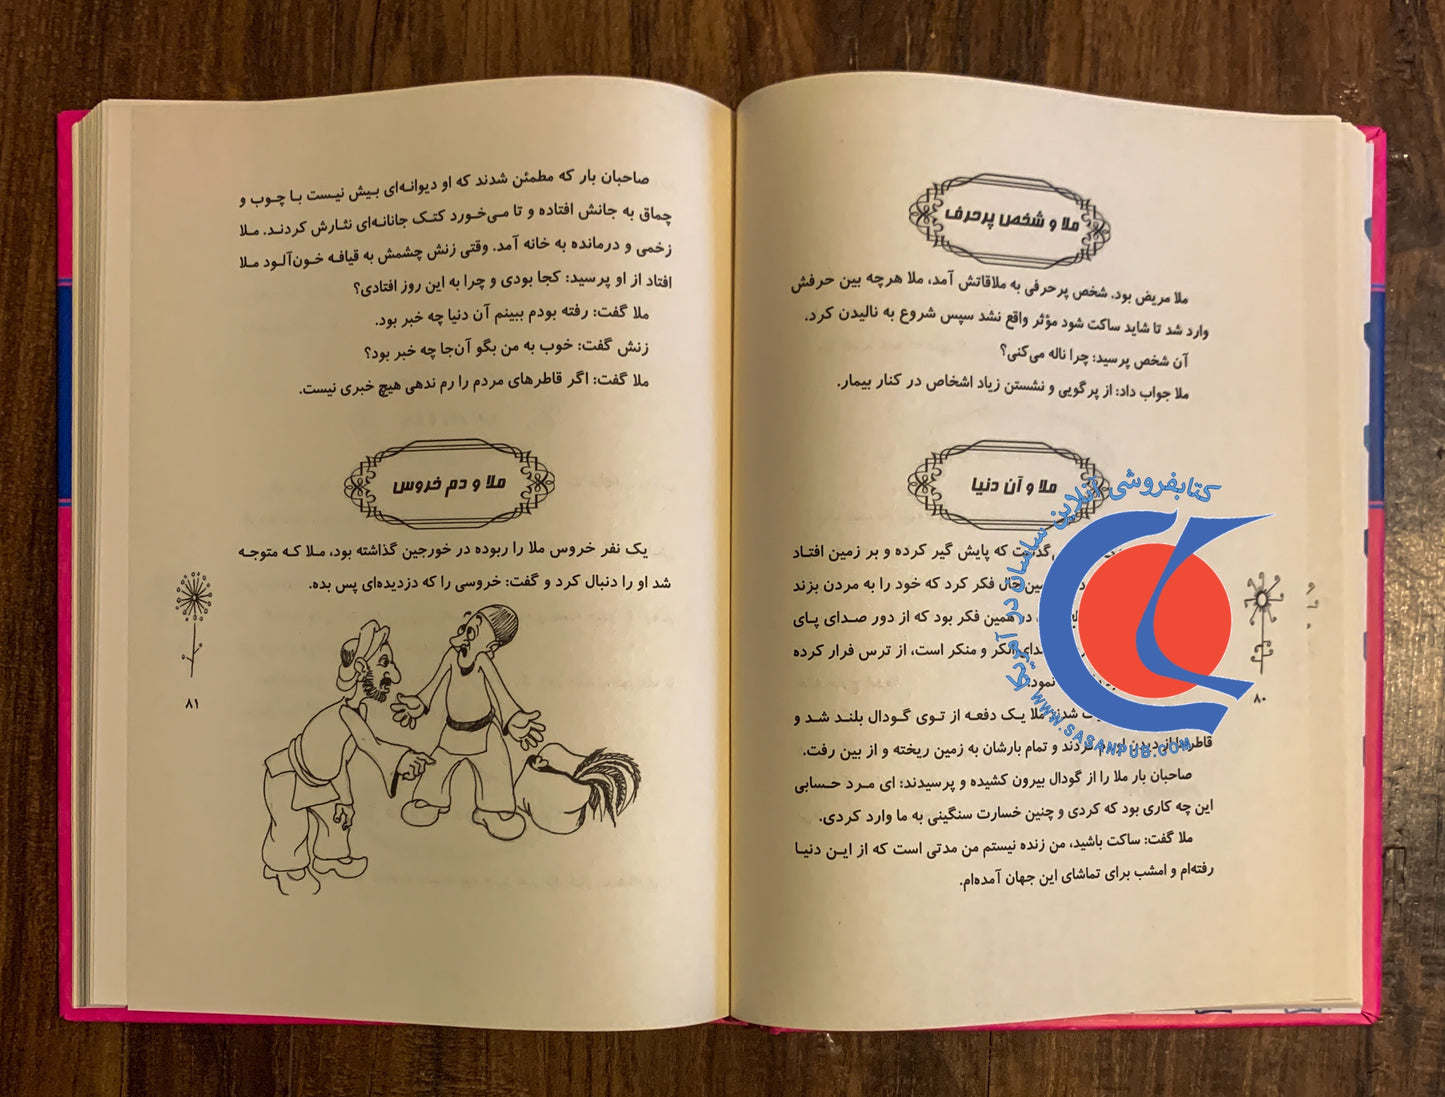 کتاب مجموعه هزار سال داستان ۸ -کلیات داستان های ملا نصرالدین